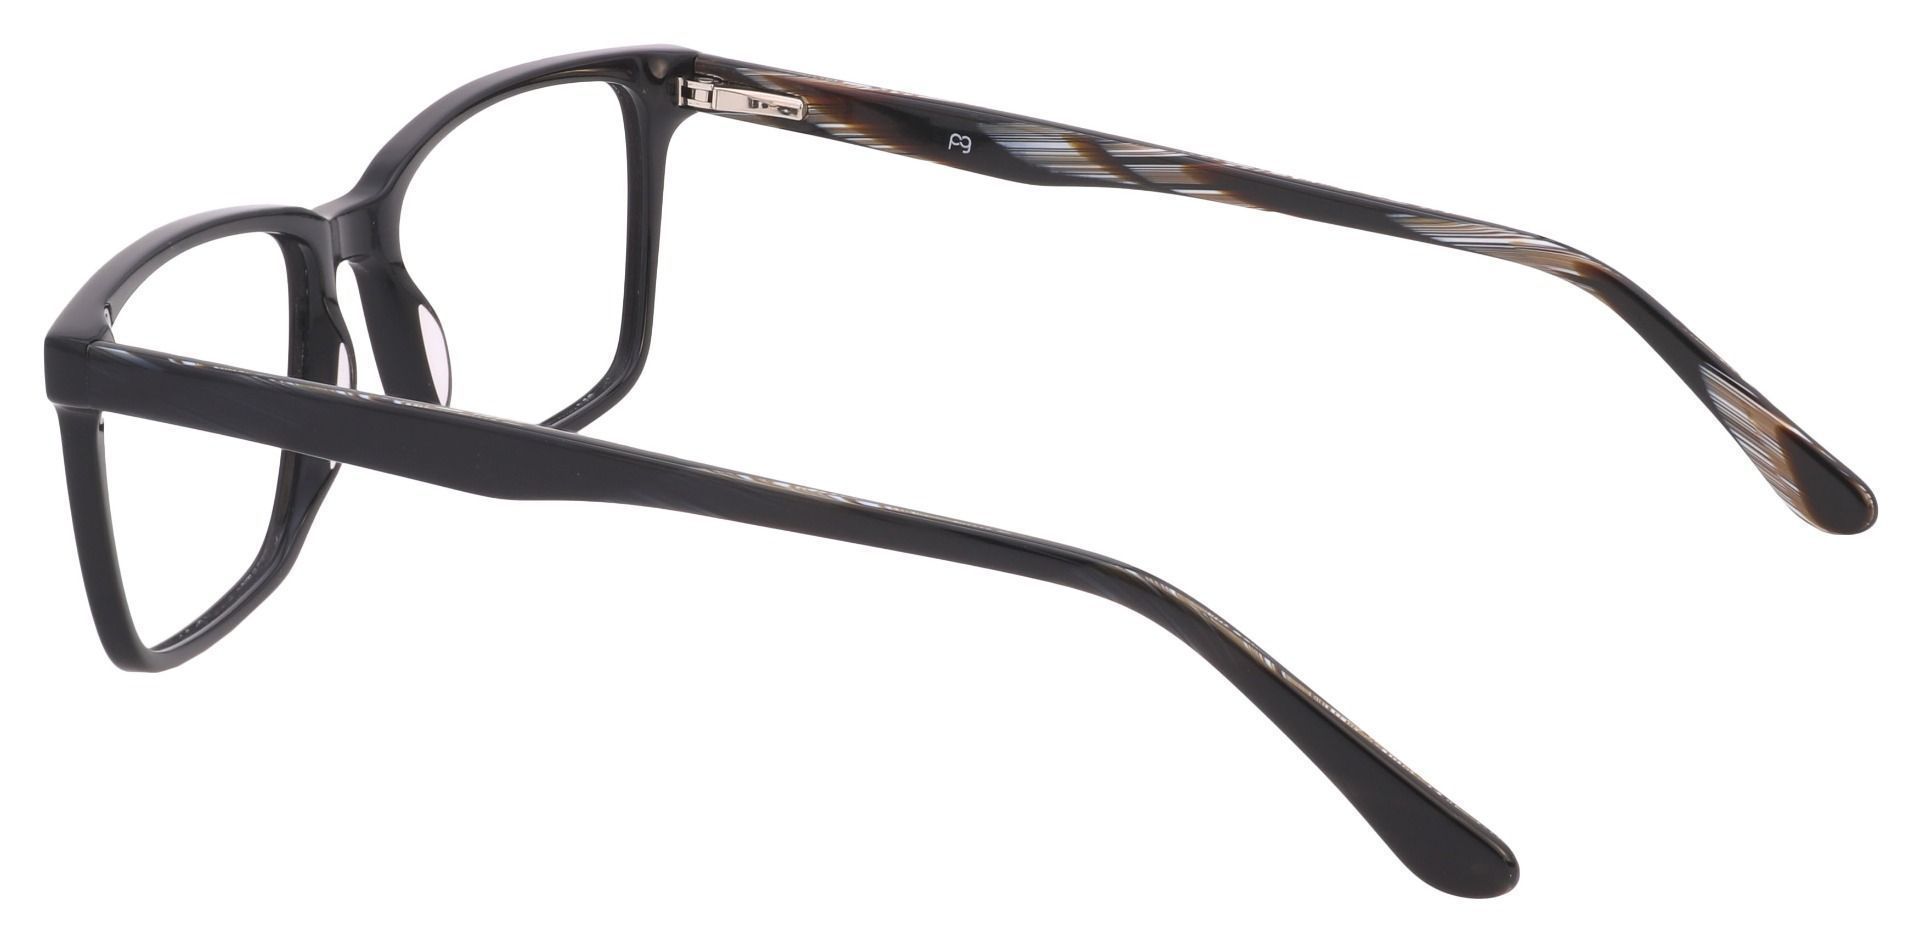 Venice Rectangle Eyeglasses Frame - Black